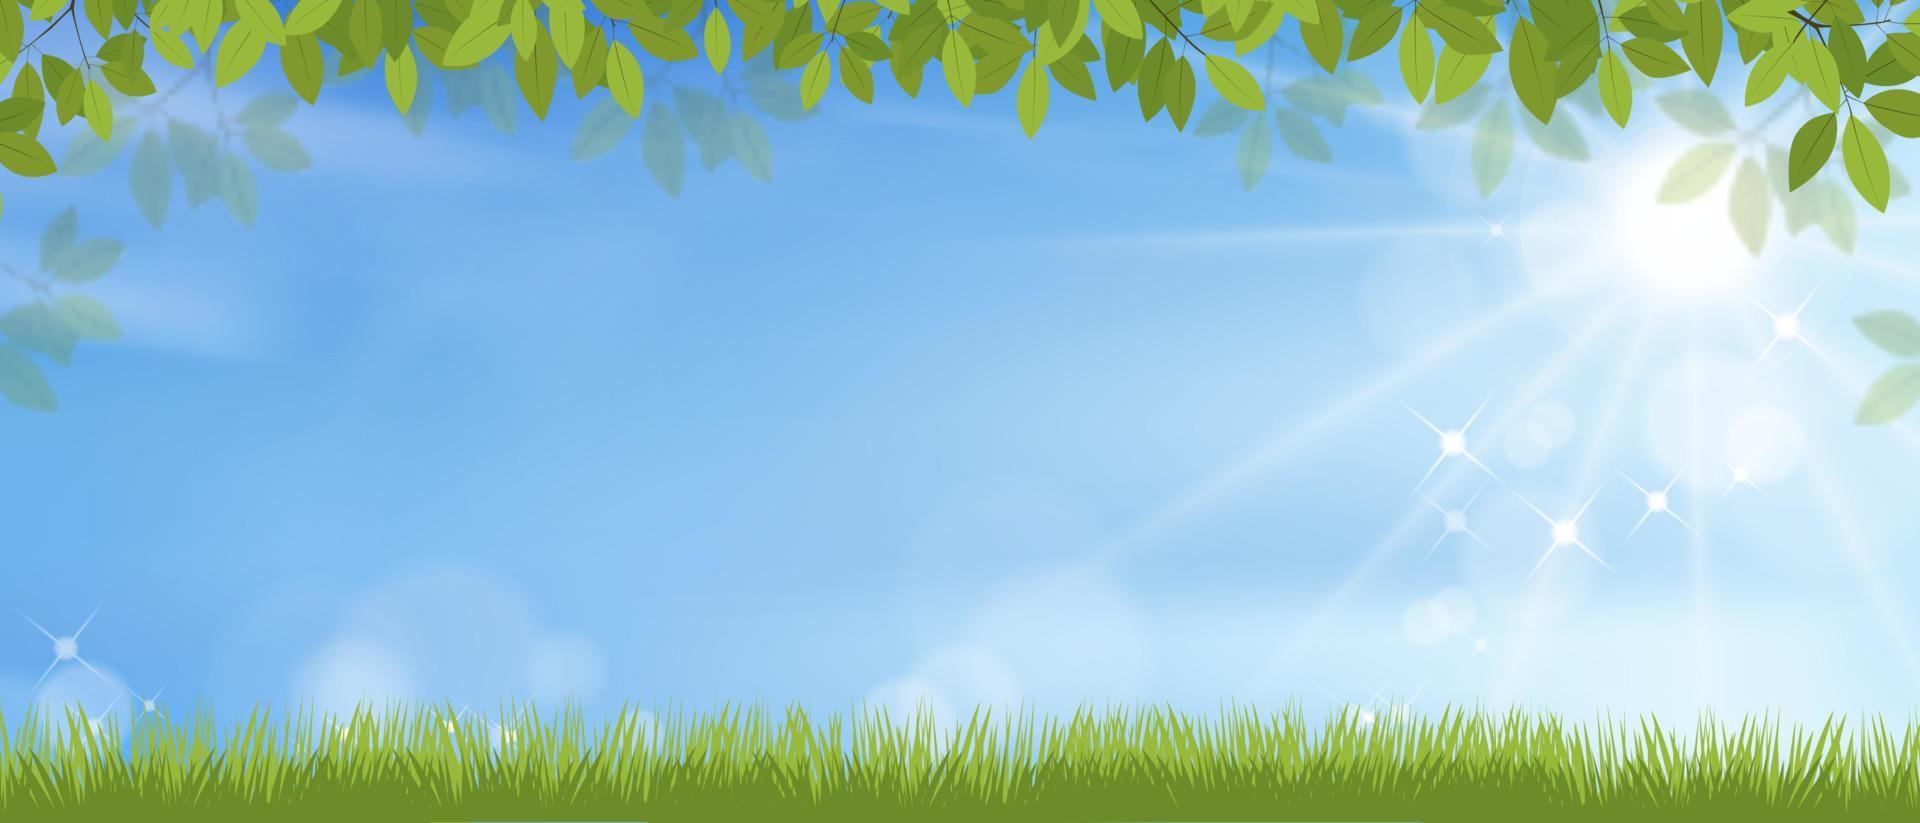 fond de printemps avec paysage de champ d'herbe, cadre de feuilles vertes sur fond de ciel bleu, dessin animé vectoriel avec espace de copie avec le soleil qui brille le matin, bannière de fond pour pâques, printemps, vacances d'été